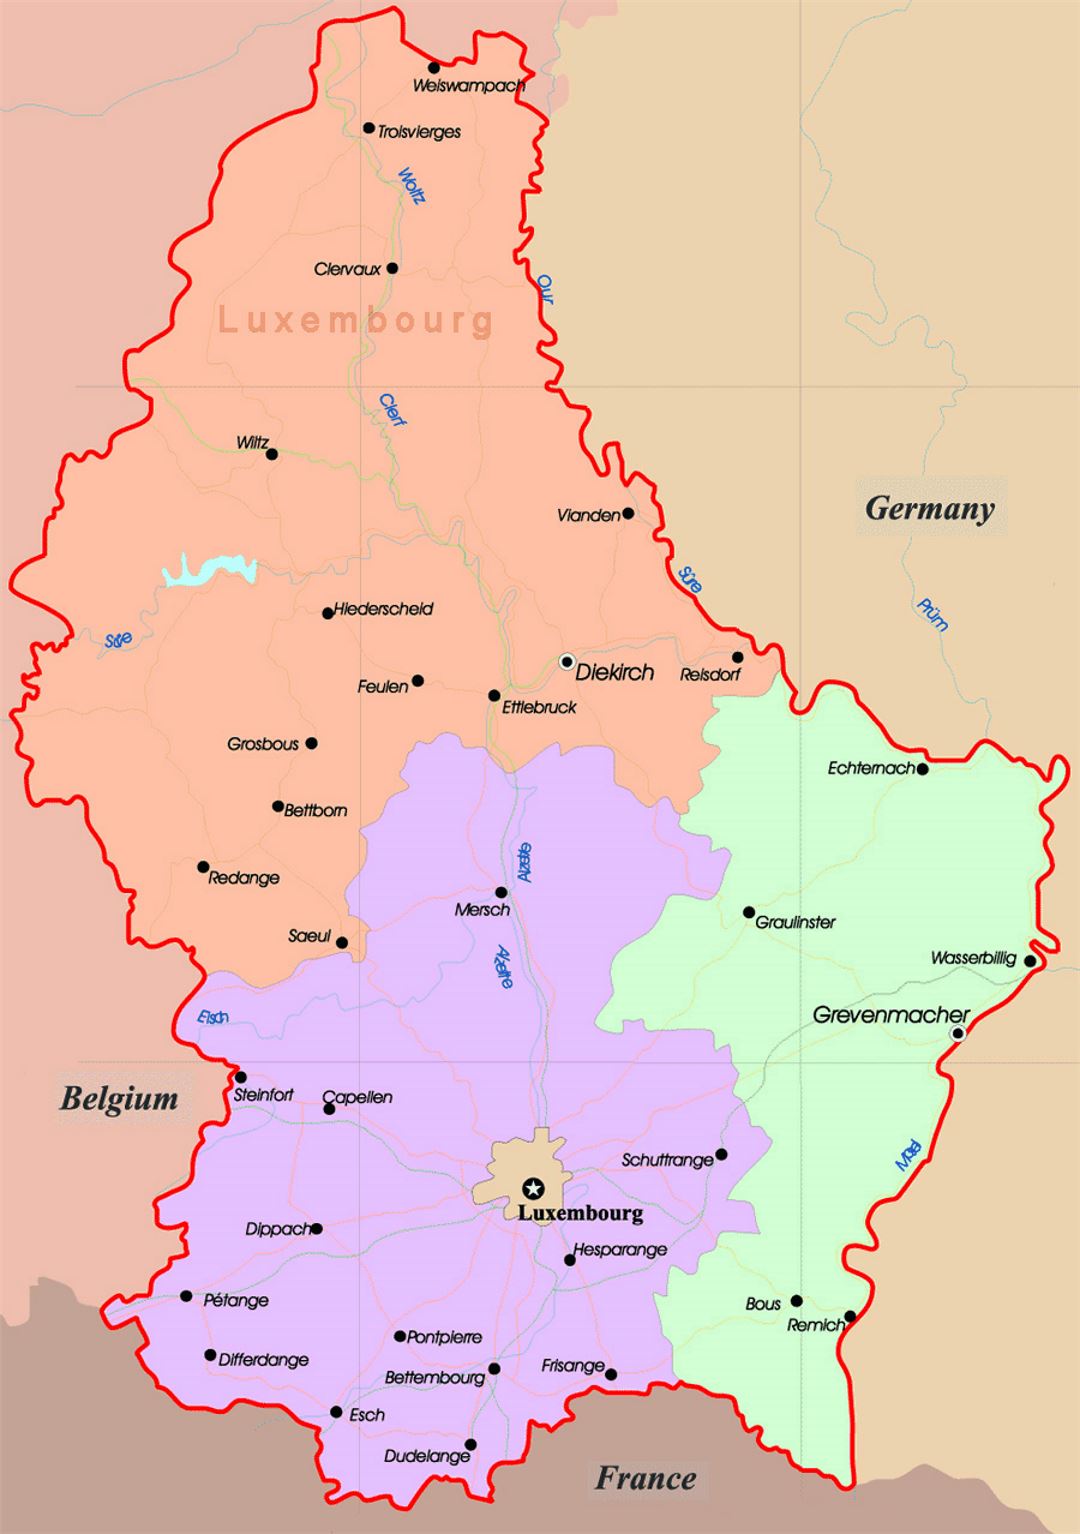 Detallado mapa administrativo de Luxemburgo con carreteras y ciudades principales